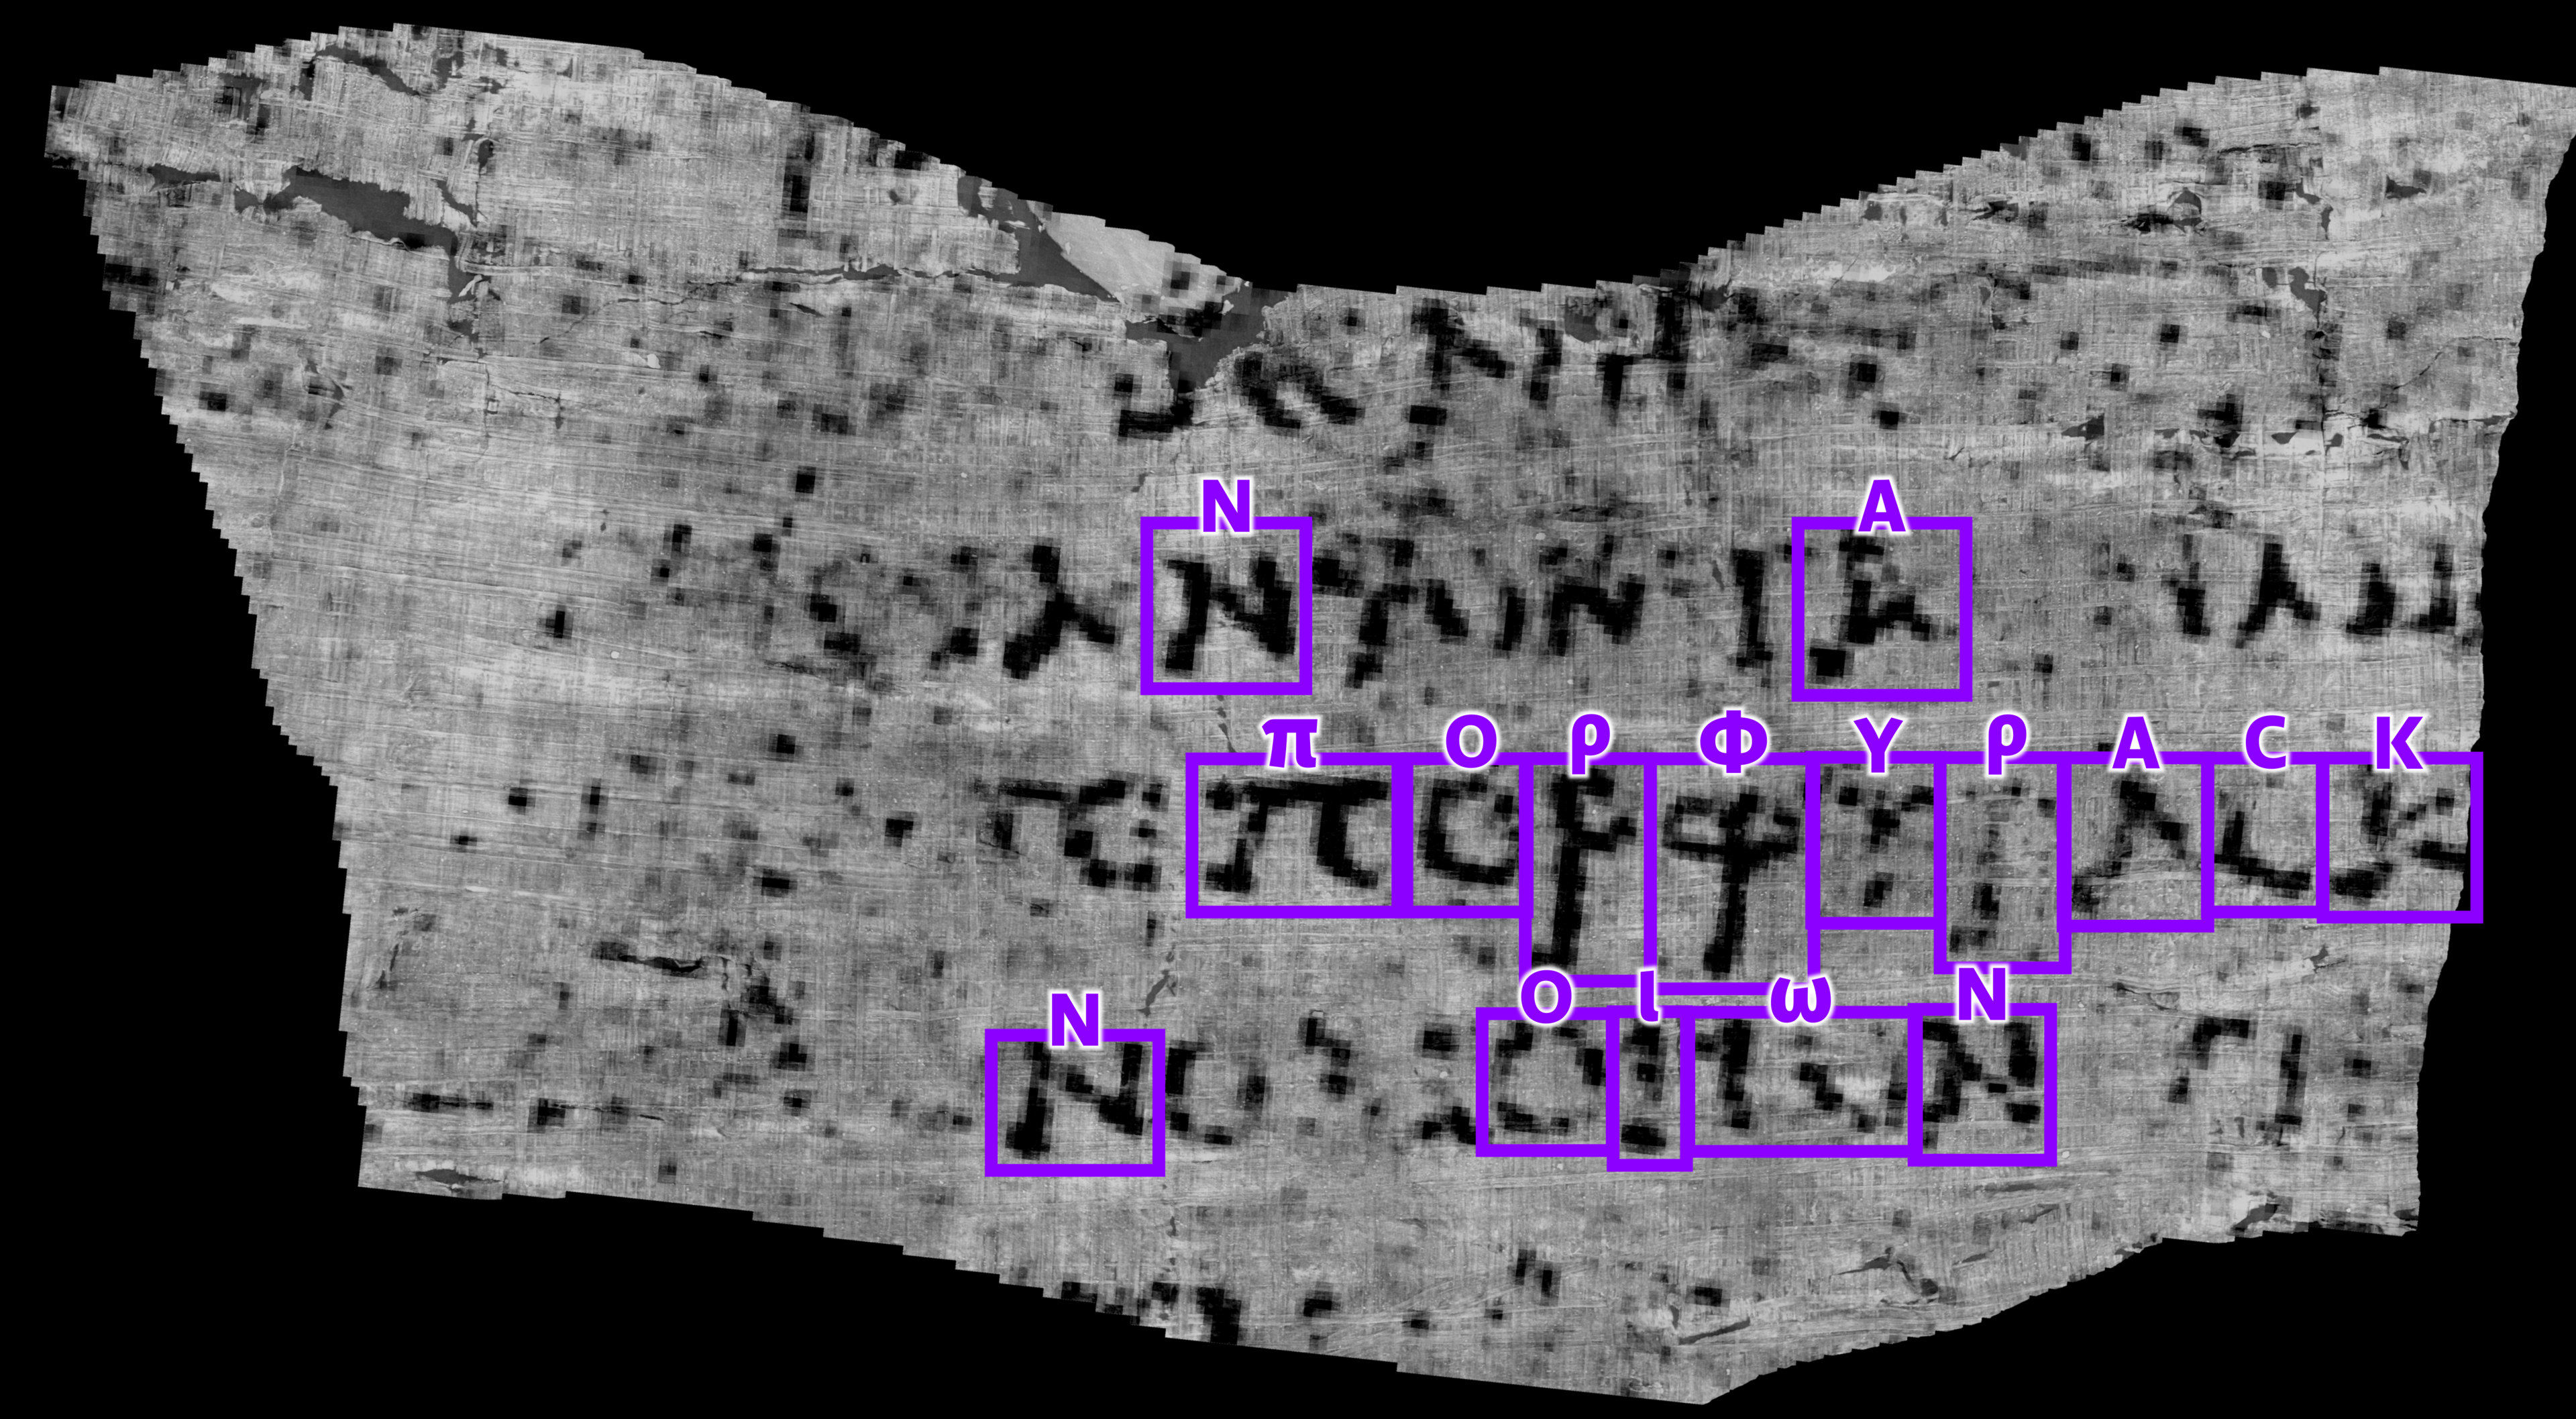 جاء فوز فاريتور الأول من خلال تحديد كلمة (ΠΟΡΦΥΡΑϹ) وتعني أرجوانية باللغة الإغريقية القديمة على خط المنتصف الظاهر في الصورة